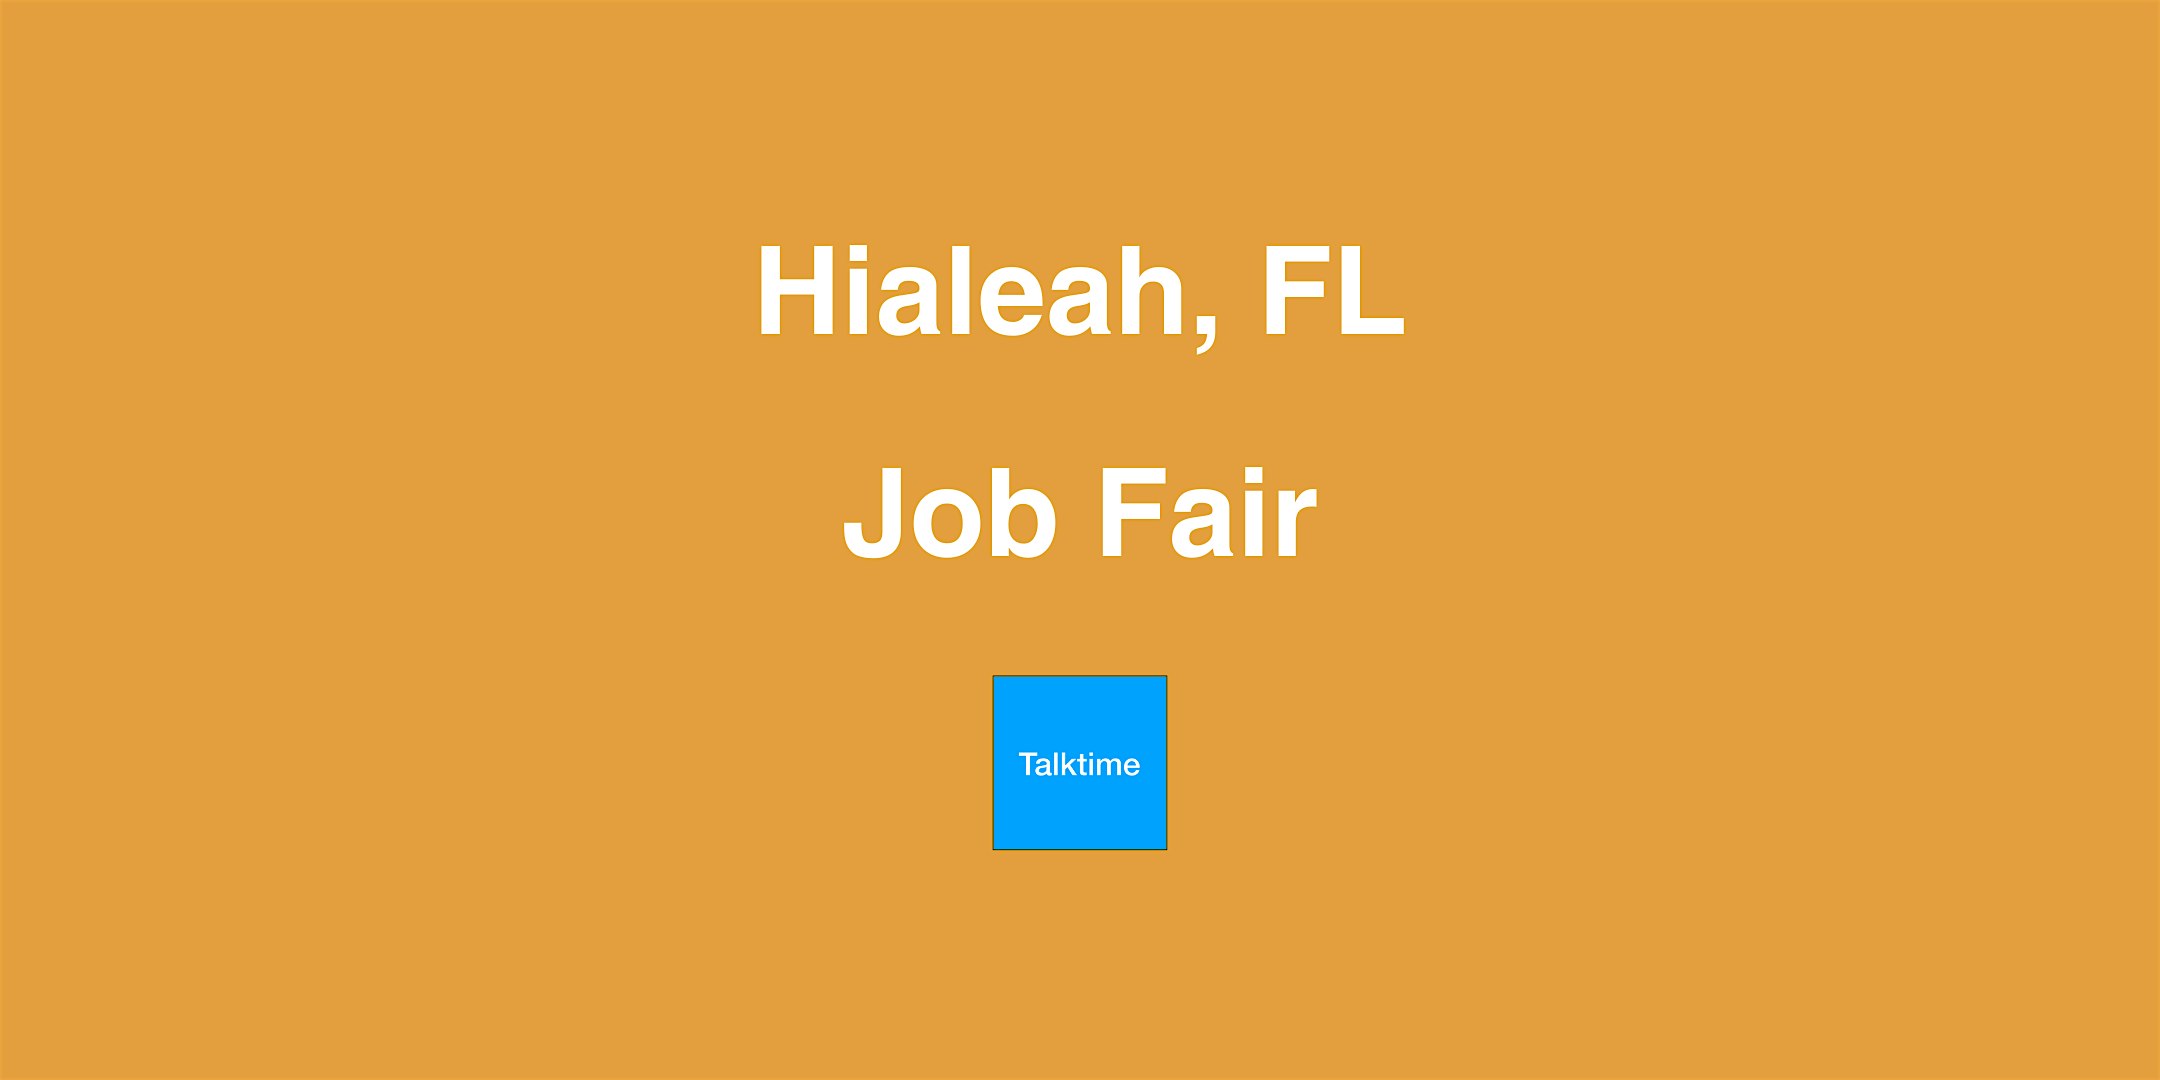 Job Fair - Hialeah